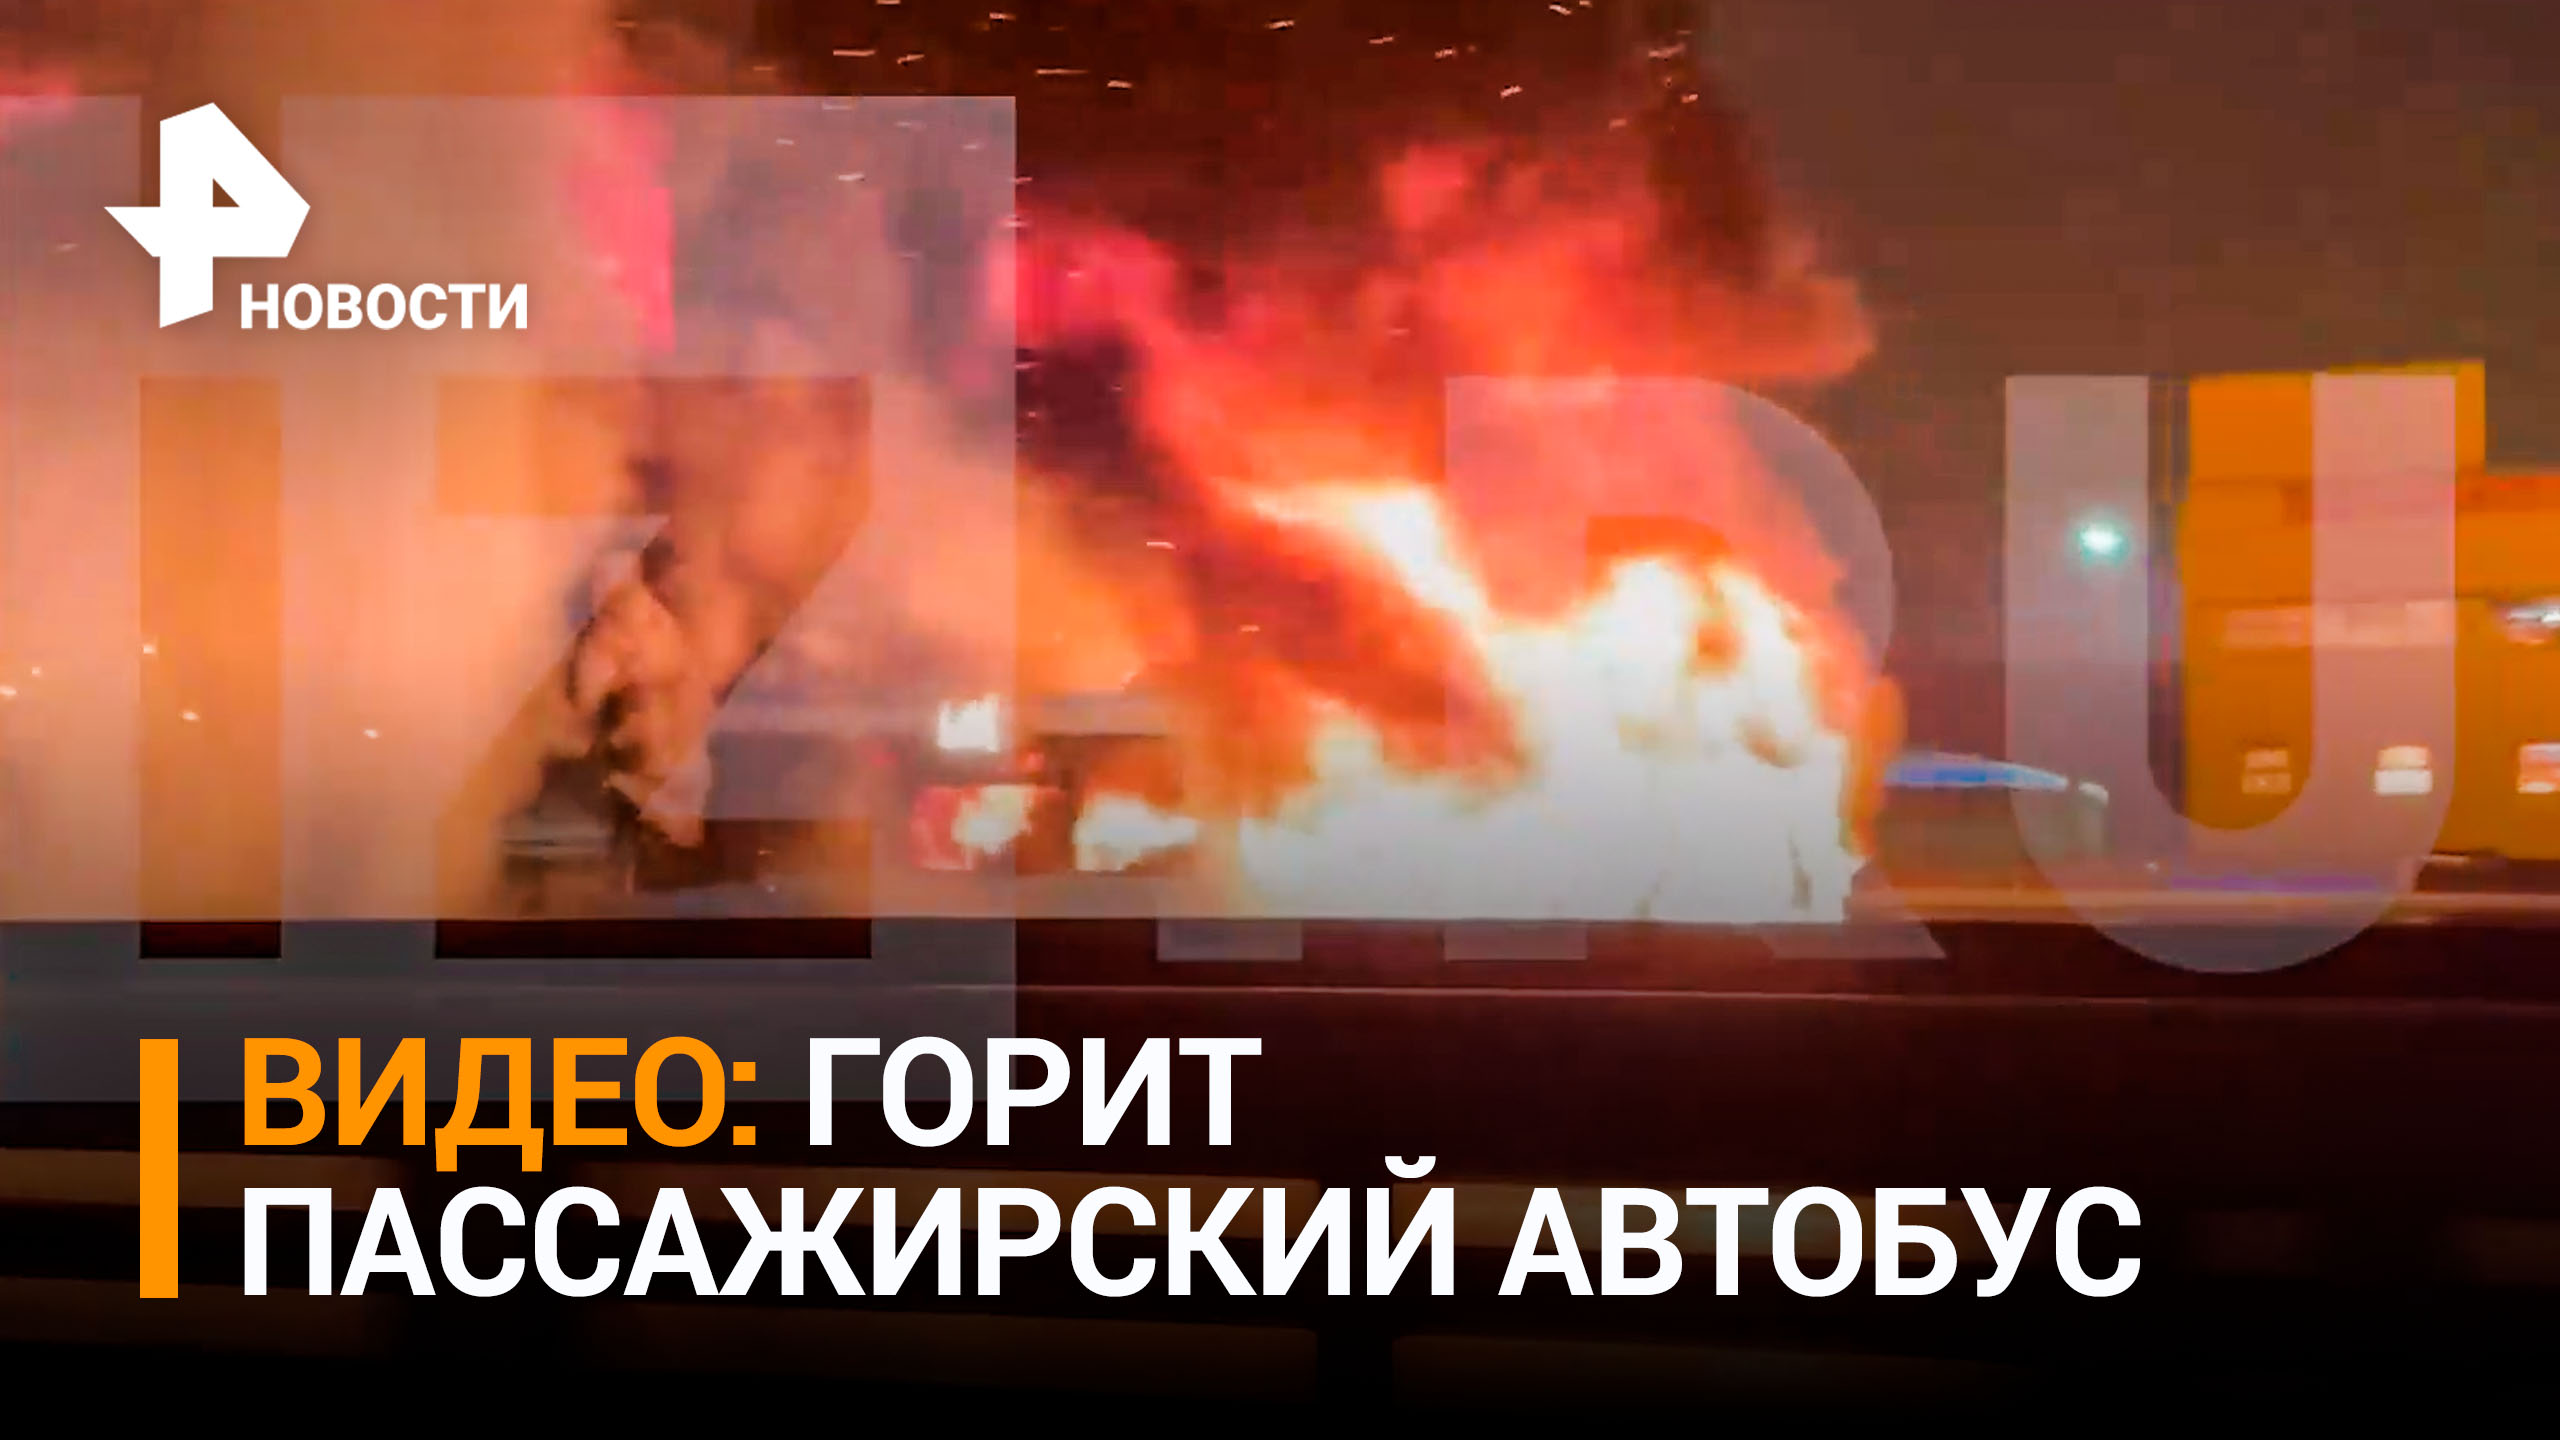 Пассажирский автобус загорелся на Киевском шоссе перед аэропортом Внуково / РЕН Новости